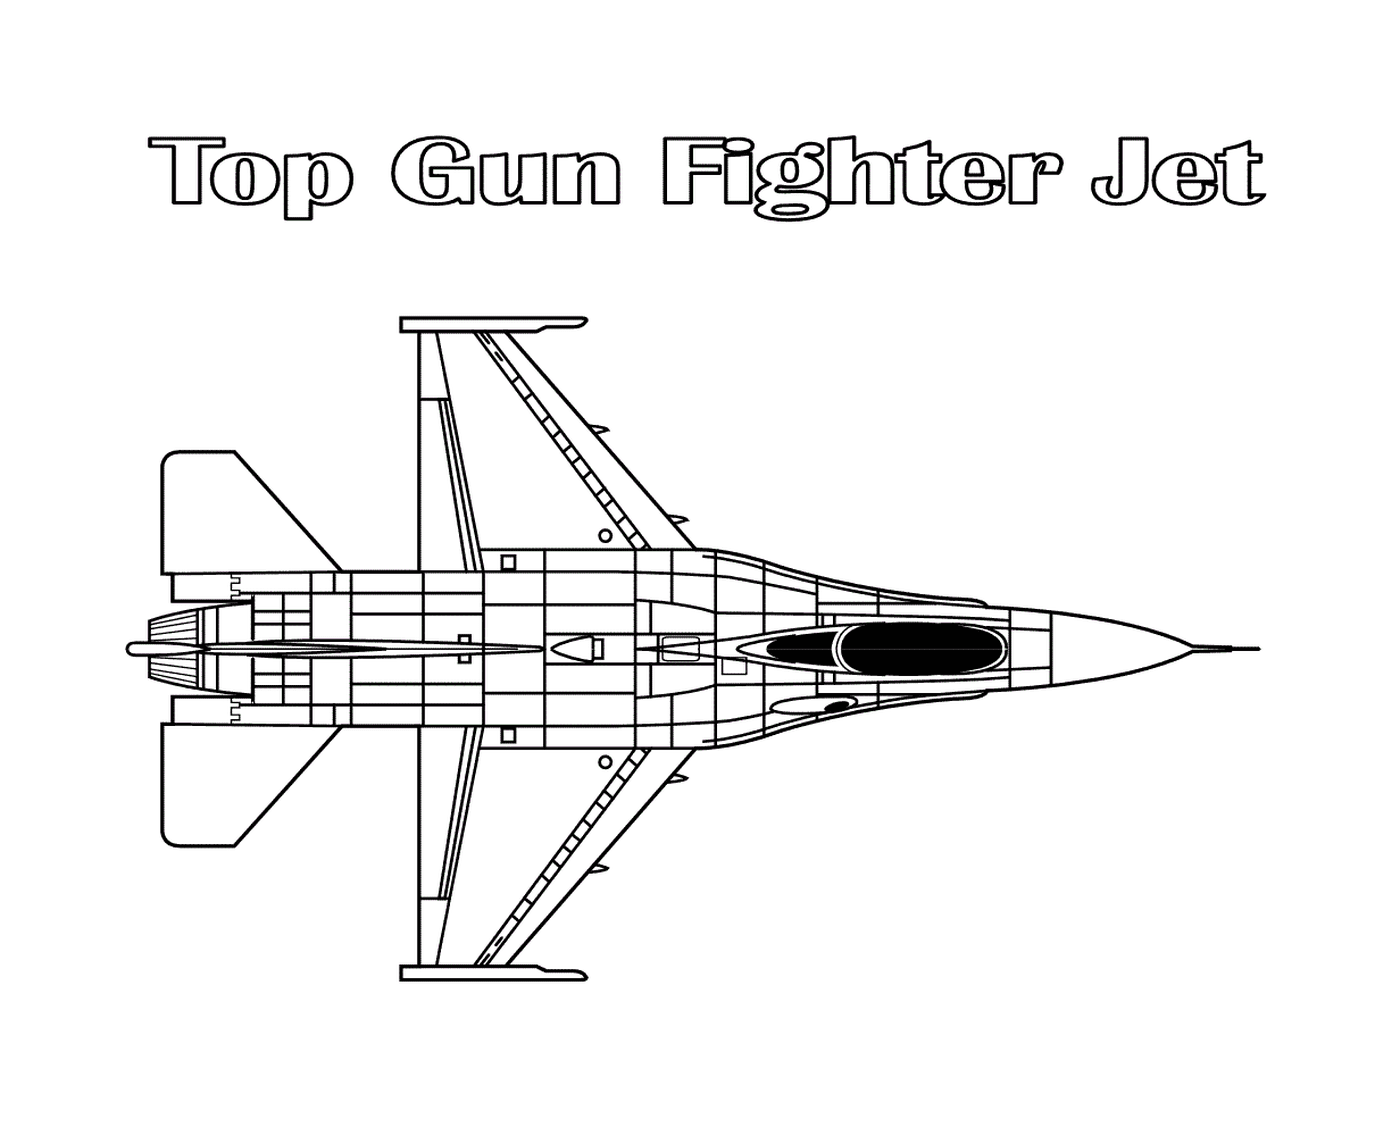  Top Gun fighter aircraft 